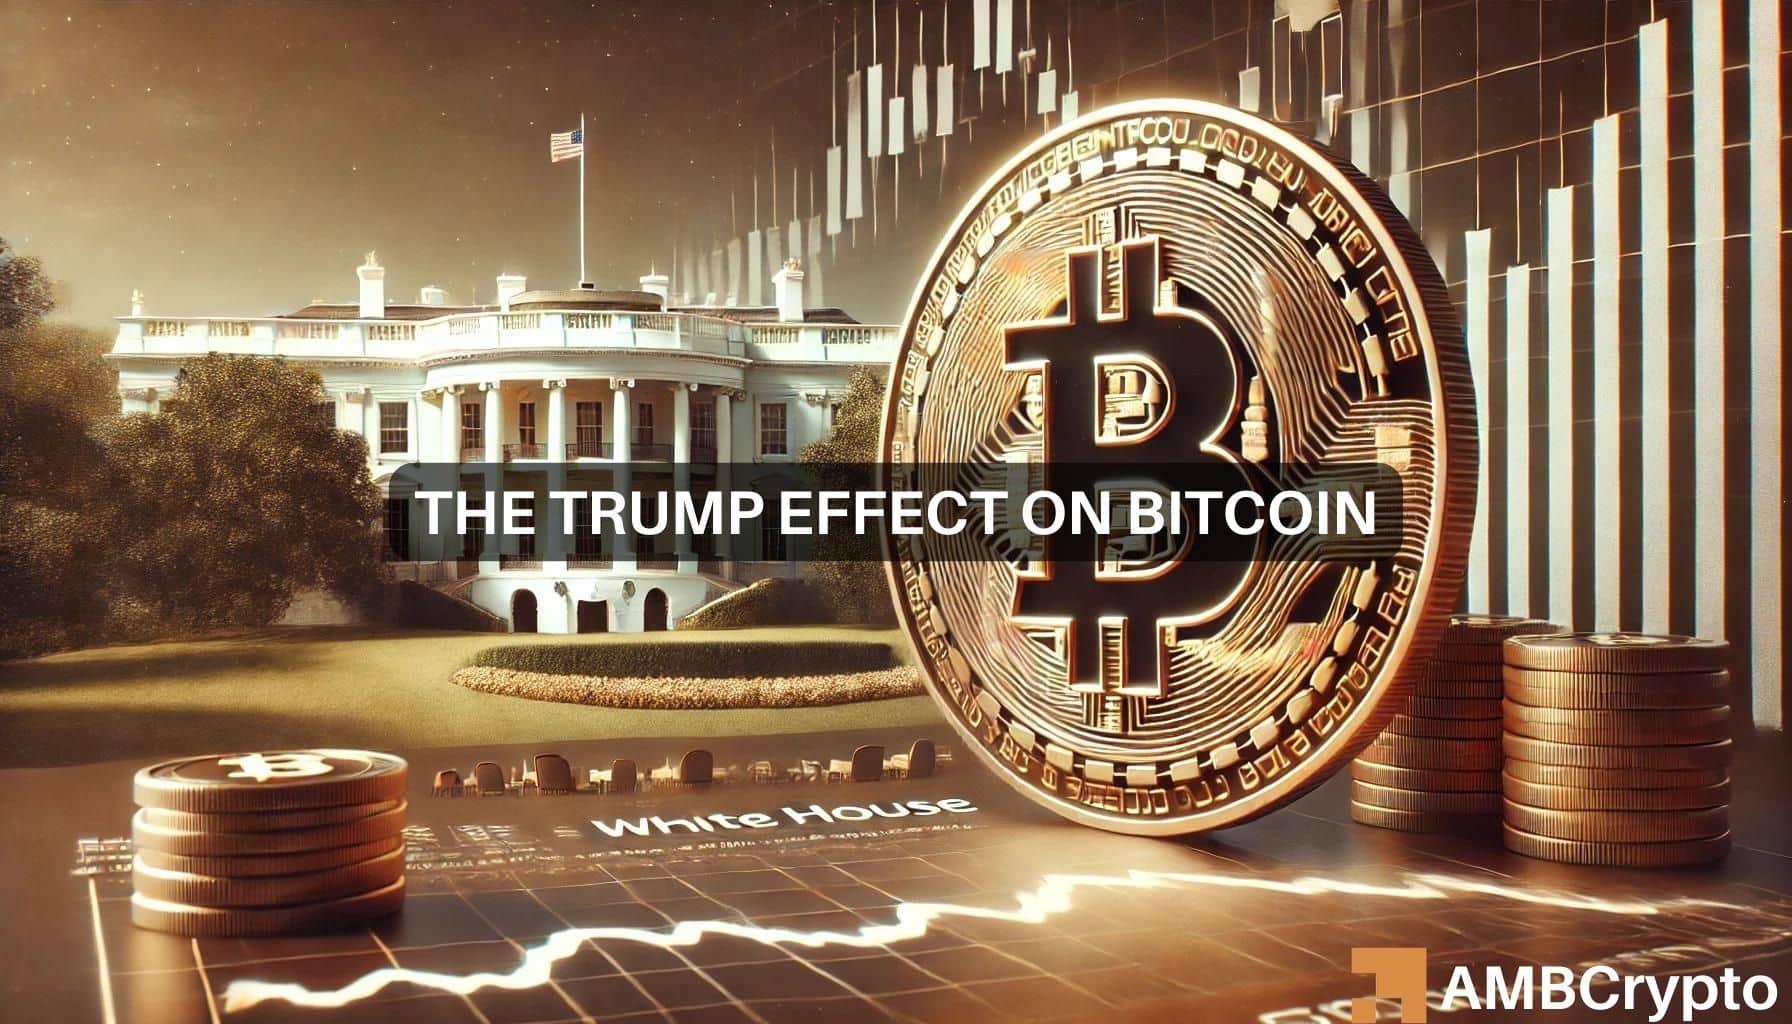 Bitcoin: Could a Trump presidency skyrocket BTC to $100,000?